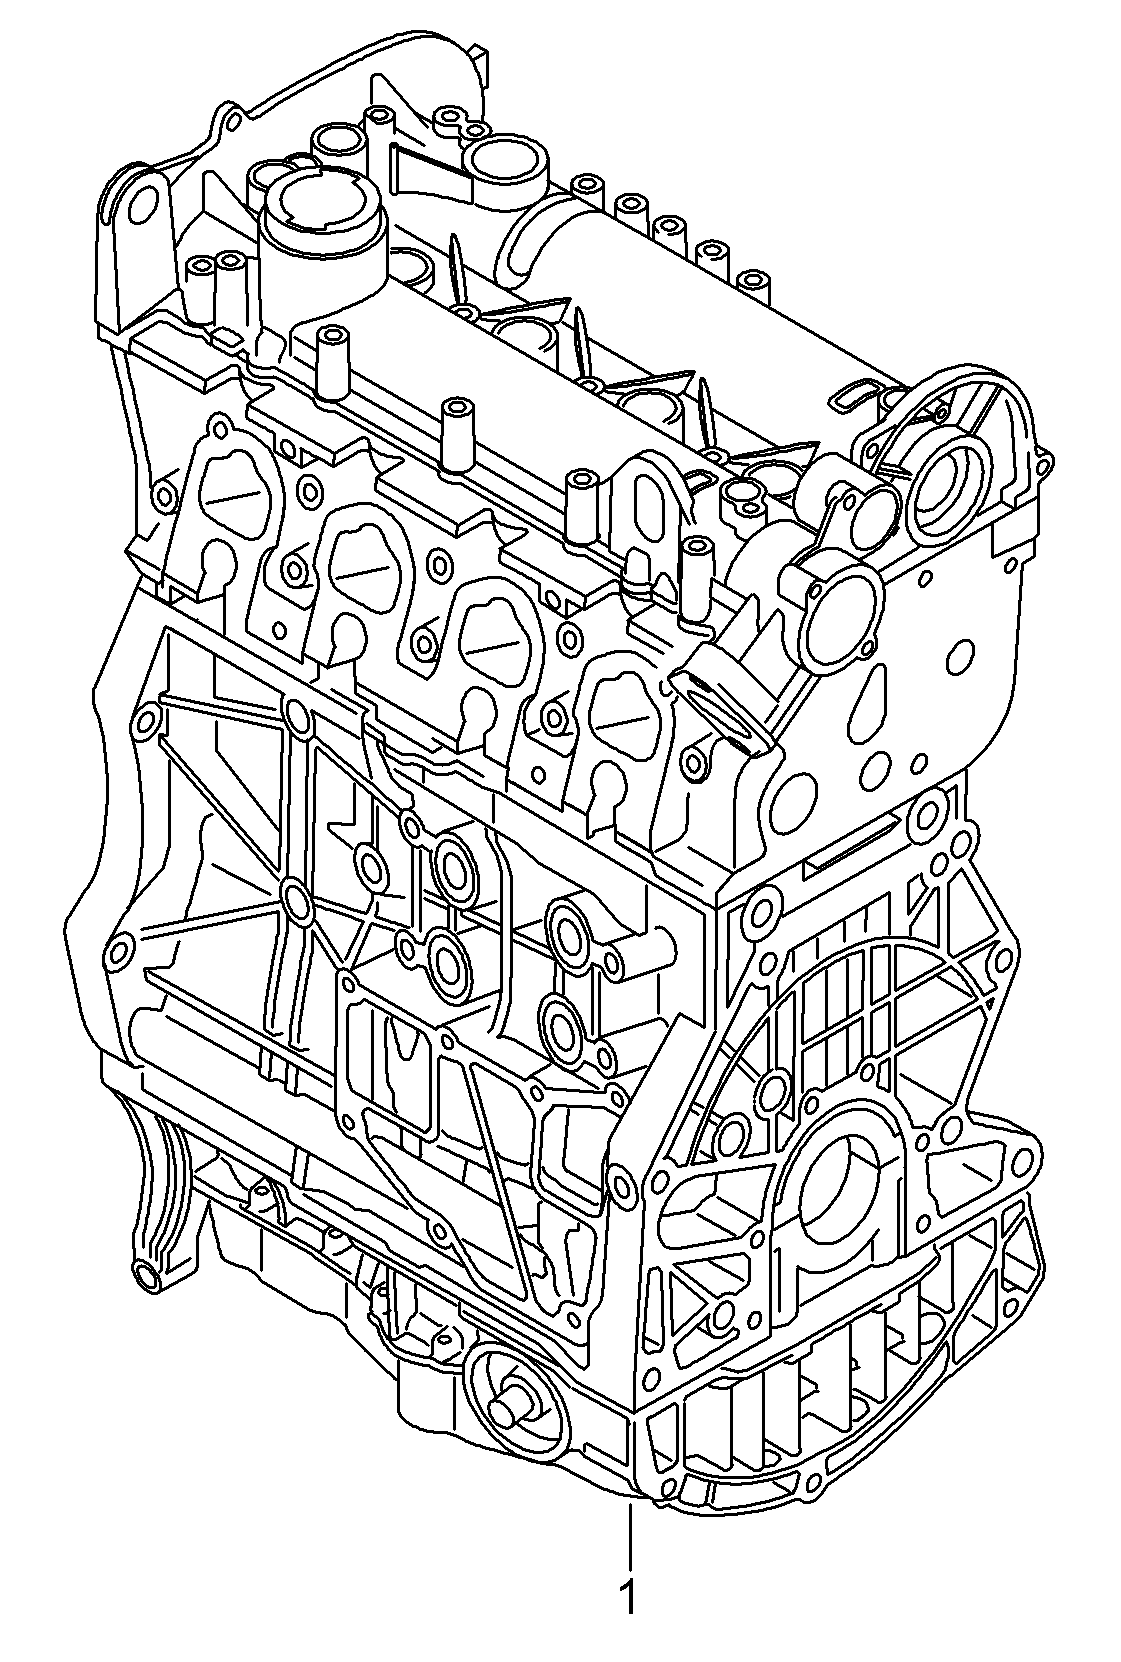 Base engine 1.2 Ltr. - Beetle - be